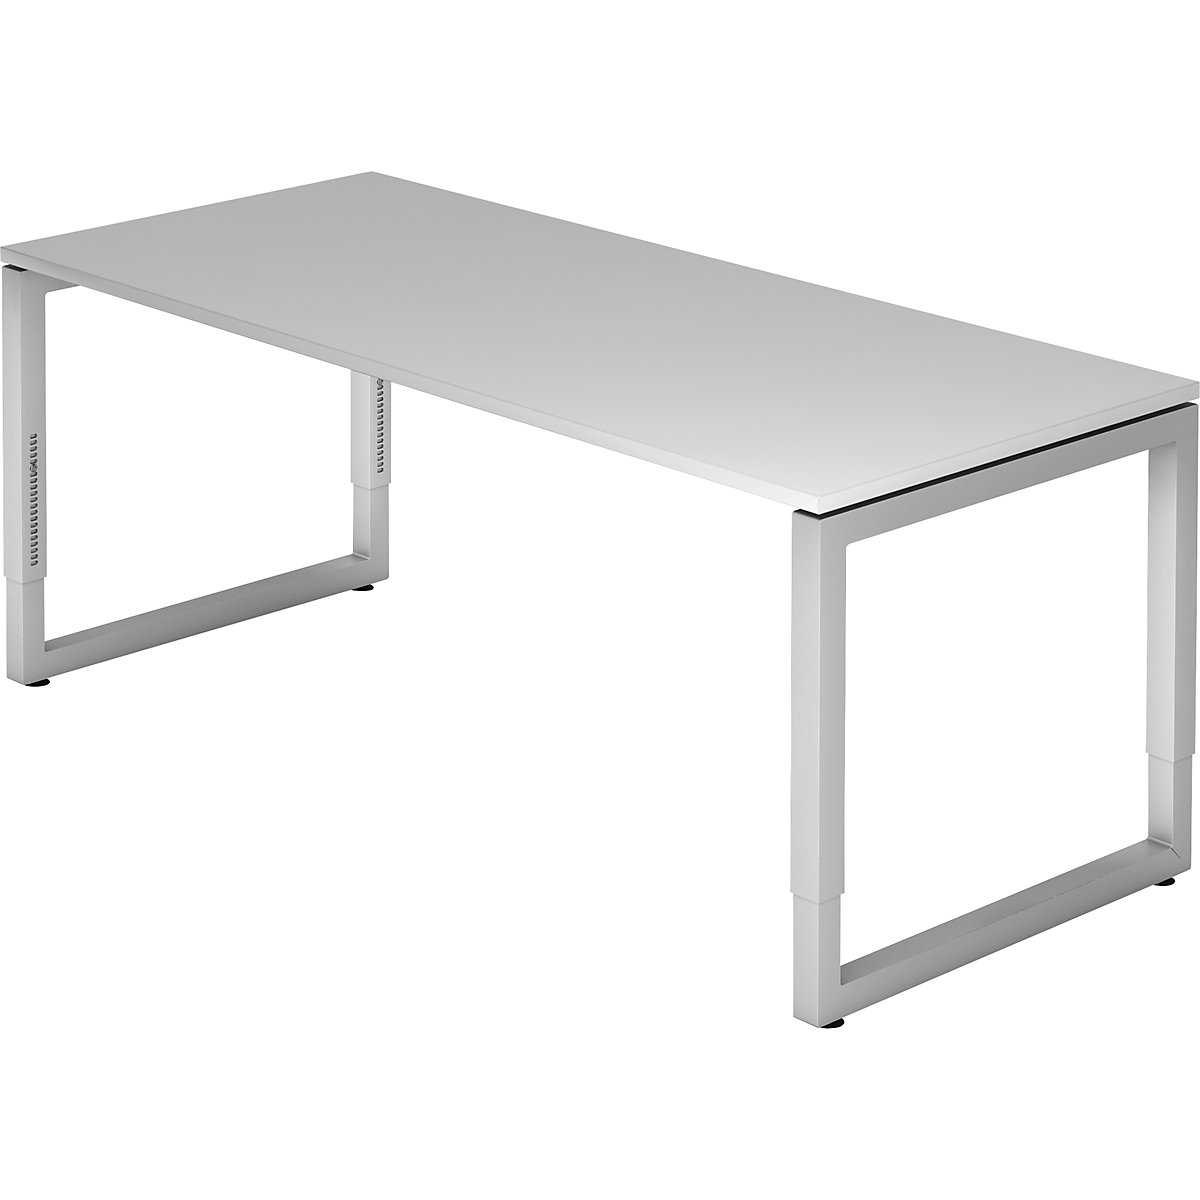 Bureautafel met frame van vierkante staalbuis ANNY – eurokraft pro, b x d = 1800 x 800 mm, lichtgrijs-7